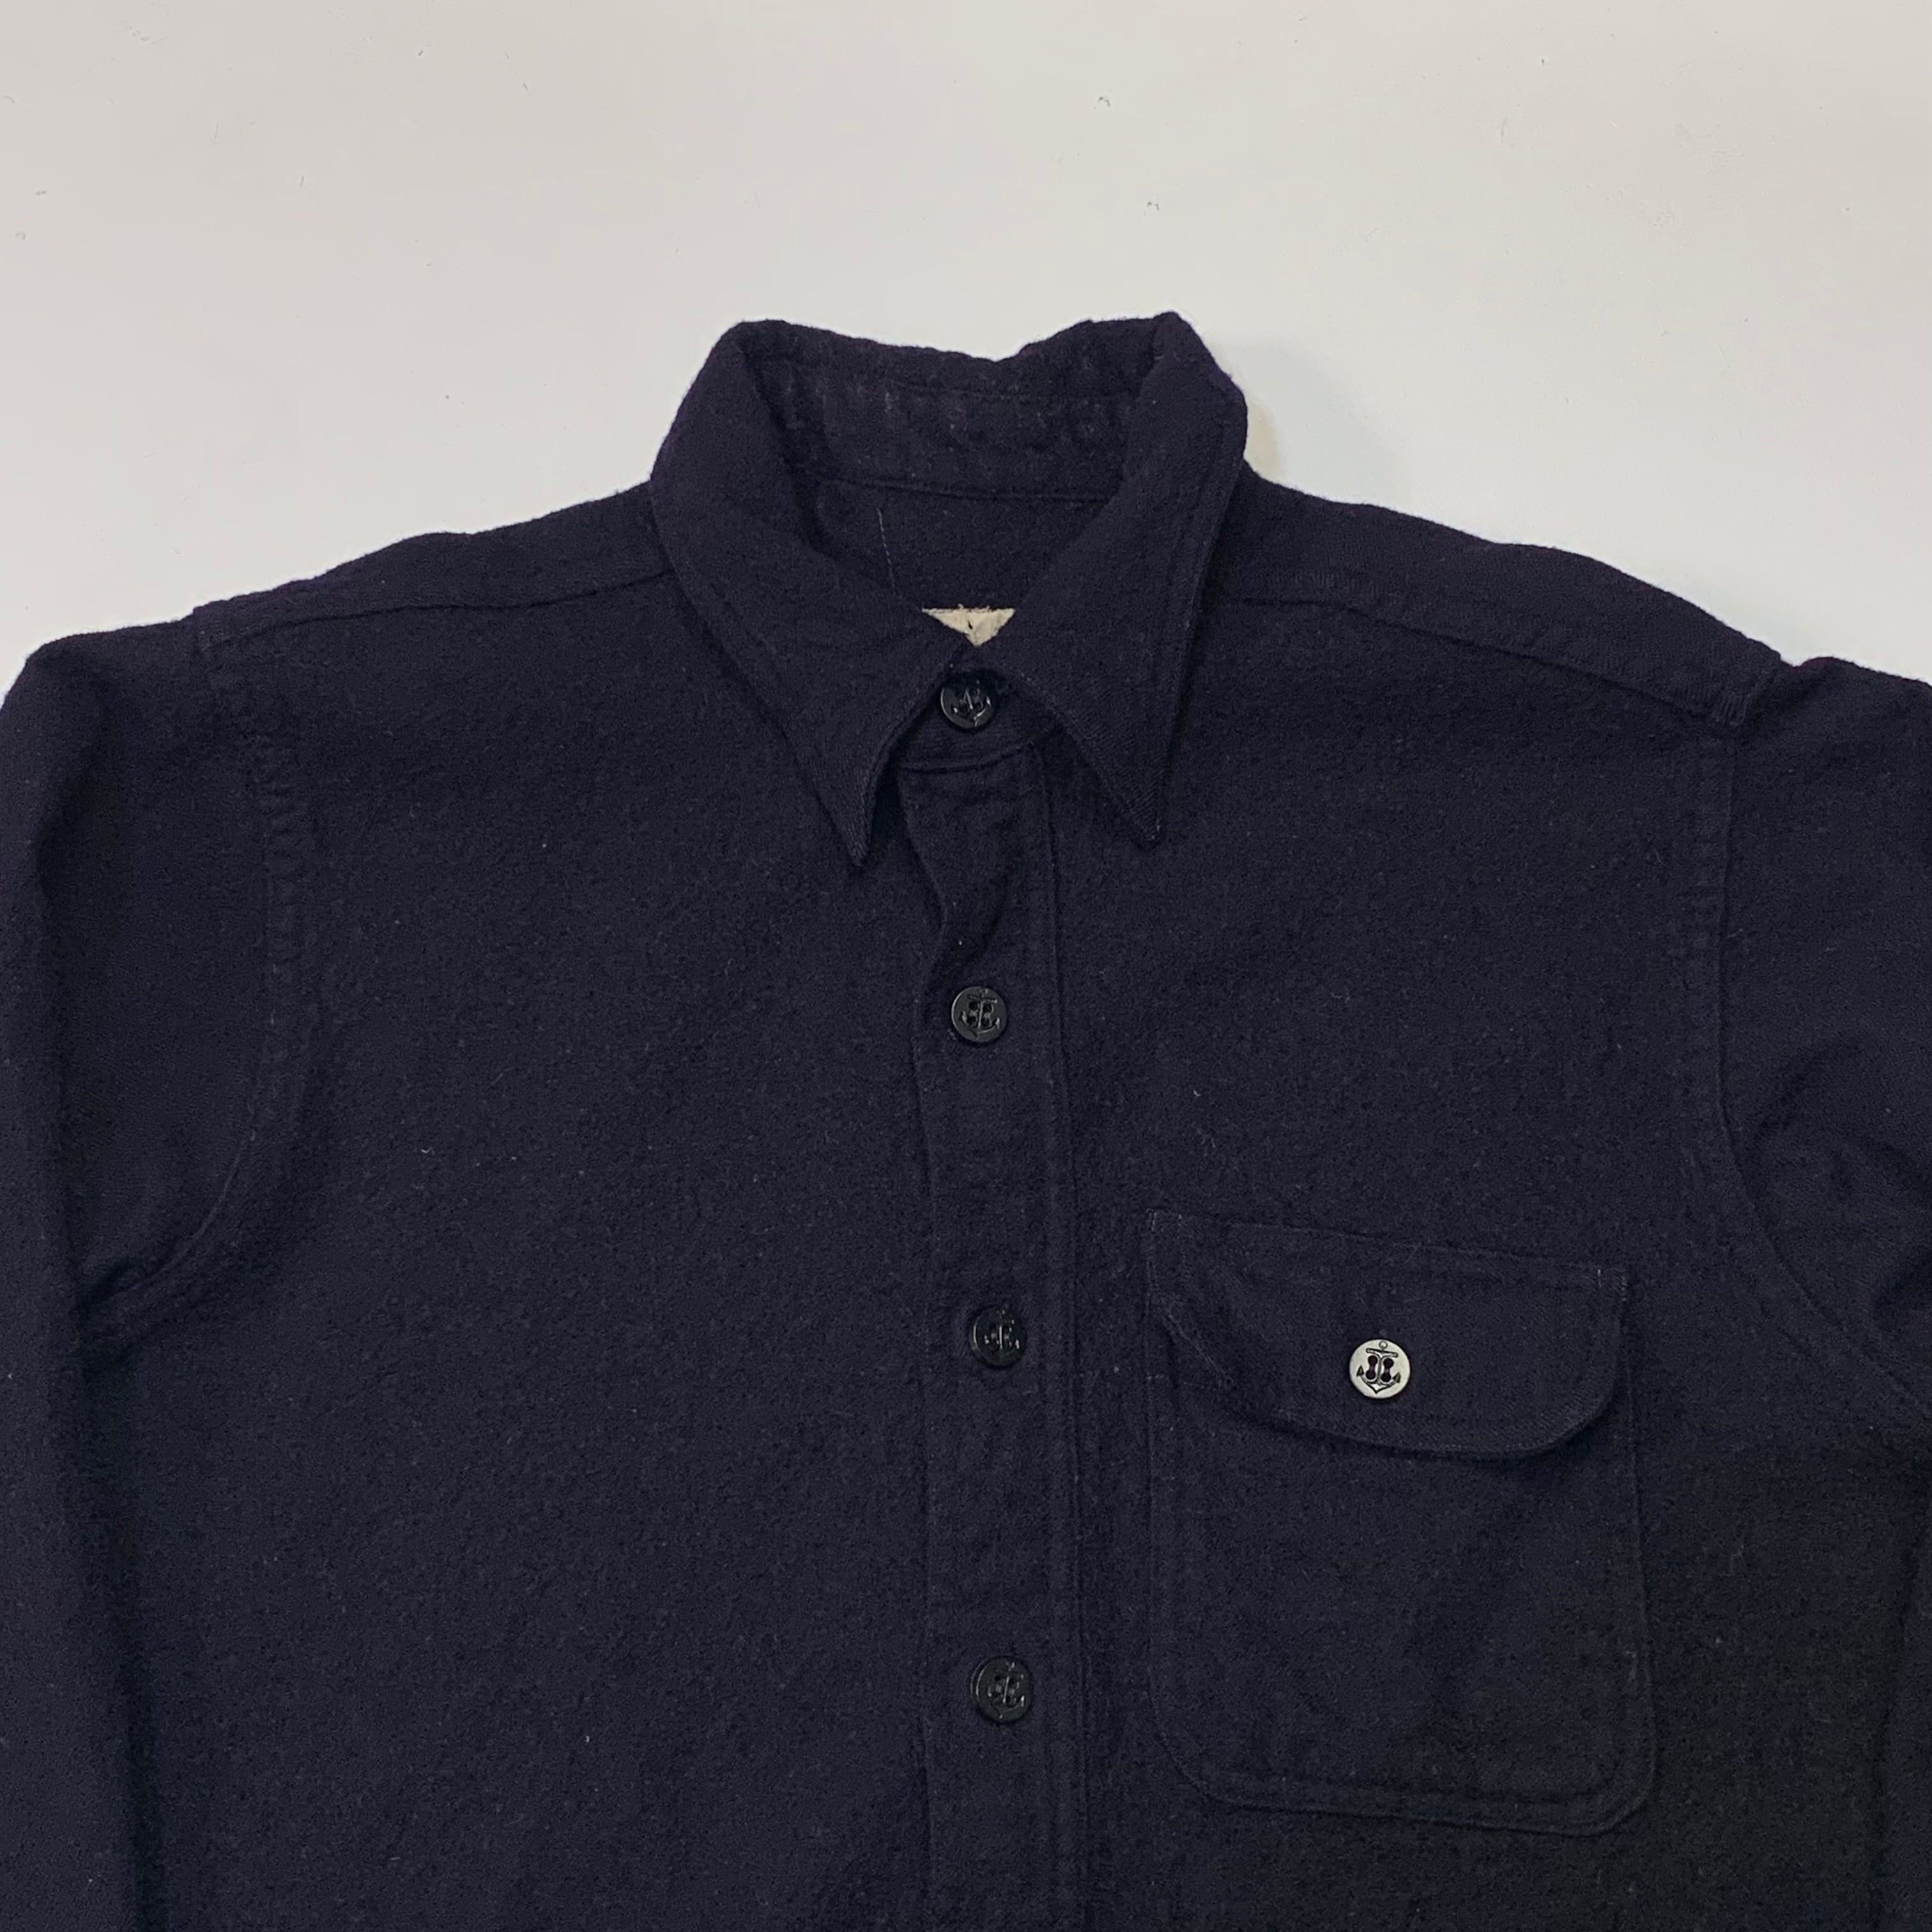 USA製ビンテージCPOウールシャツウールジャケット40s40年代50s50年代